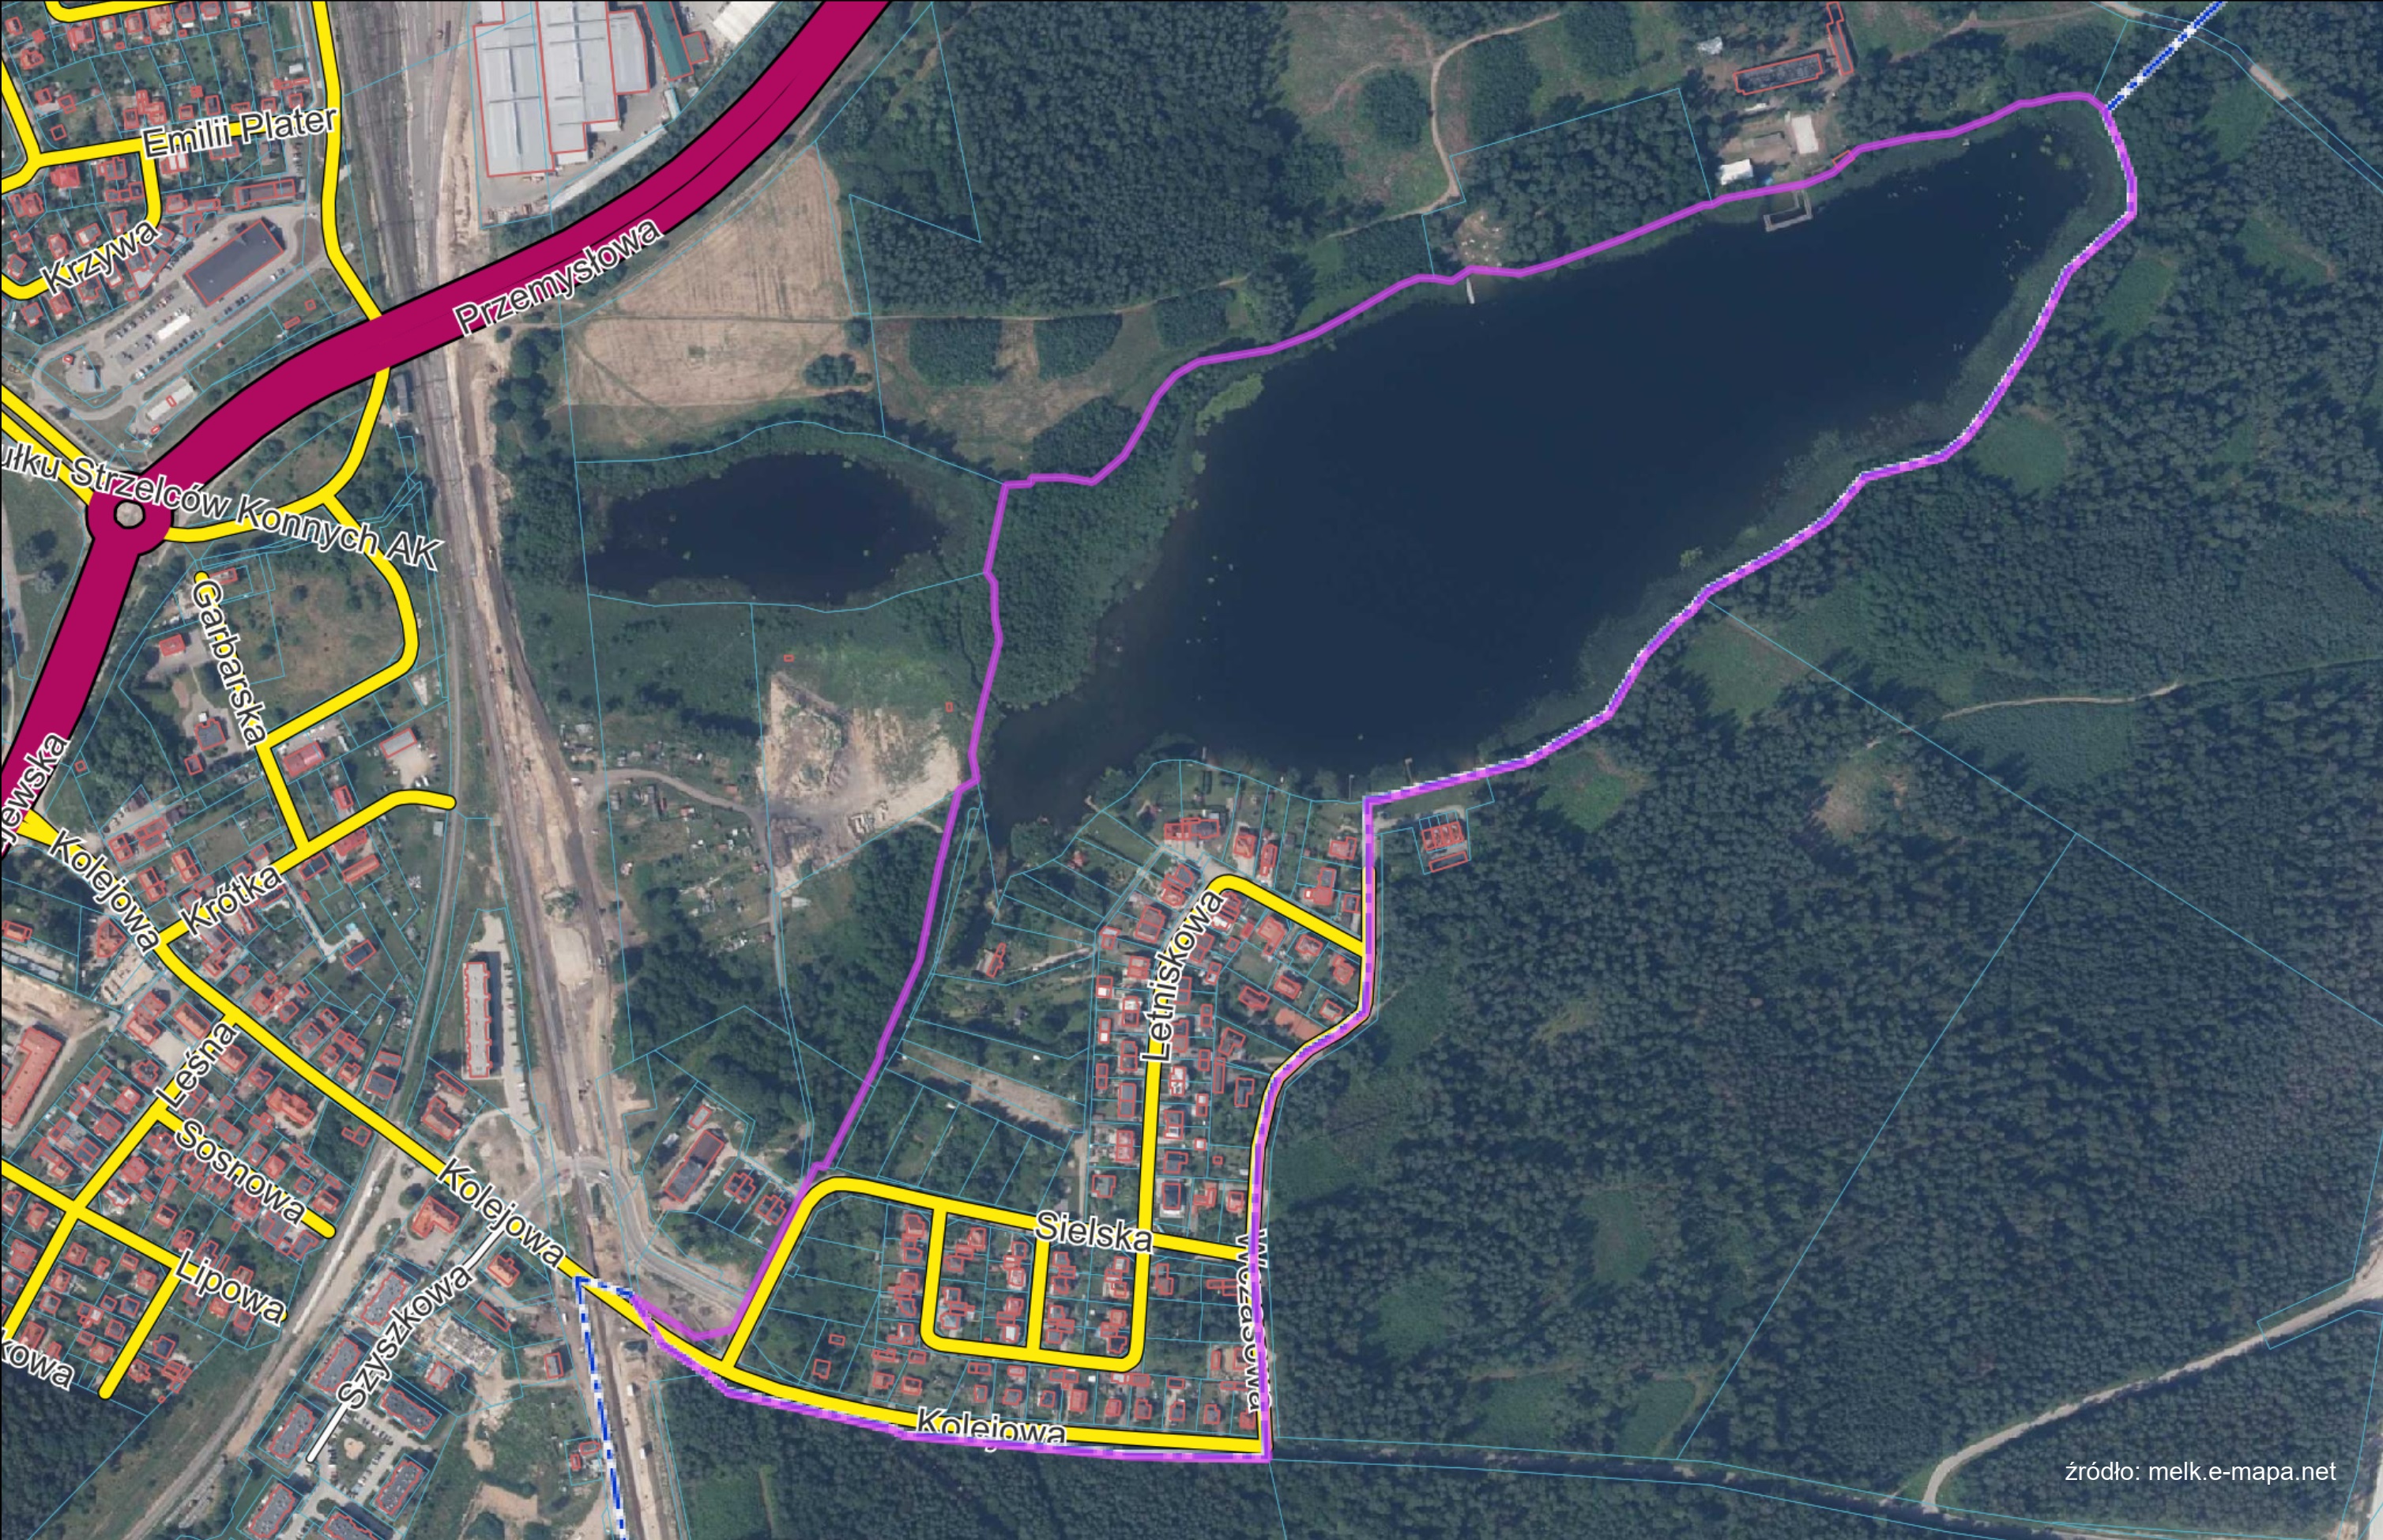 Повторне представлення проекту плану місцевого просторового розвитку "Ełk - Sielska" для громадського огляду